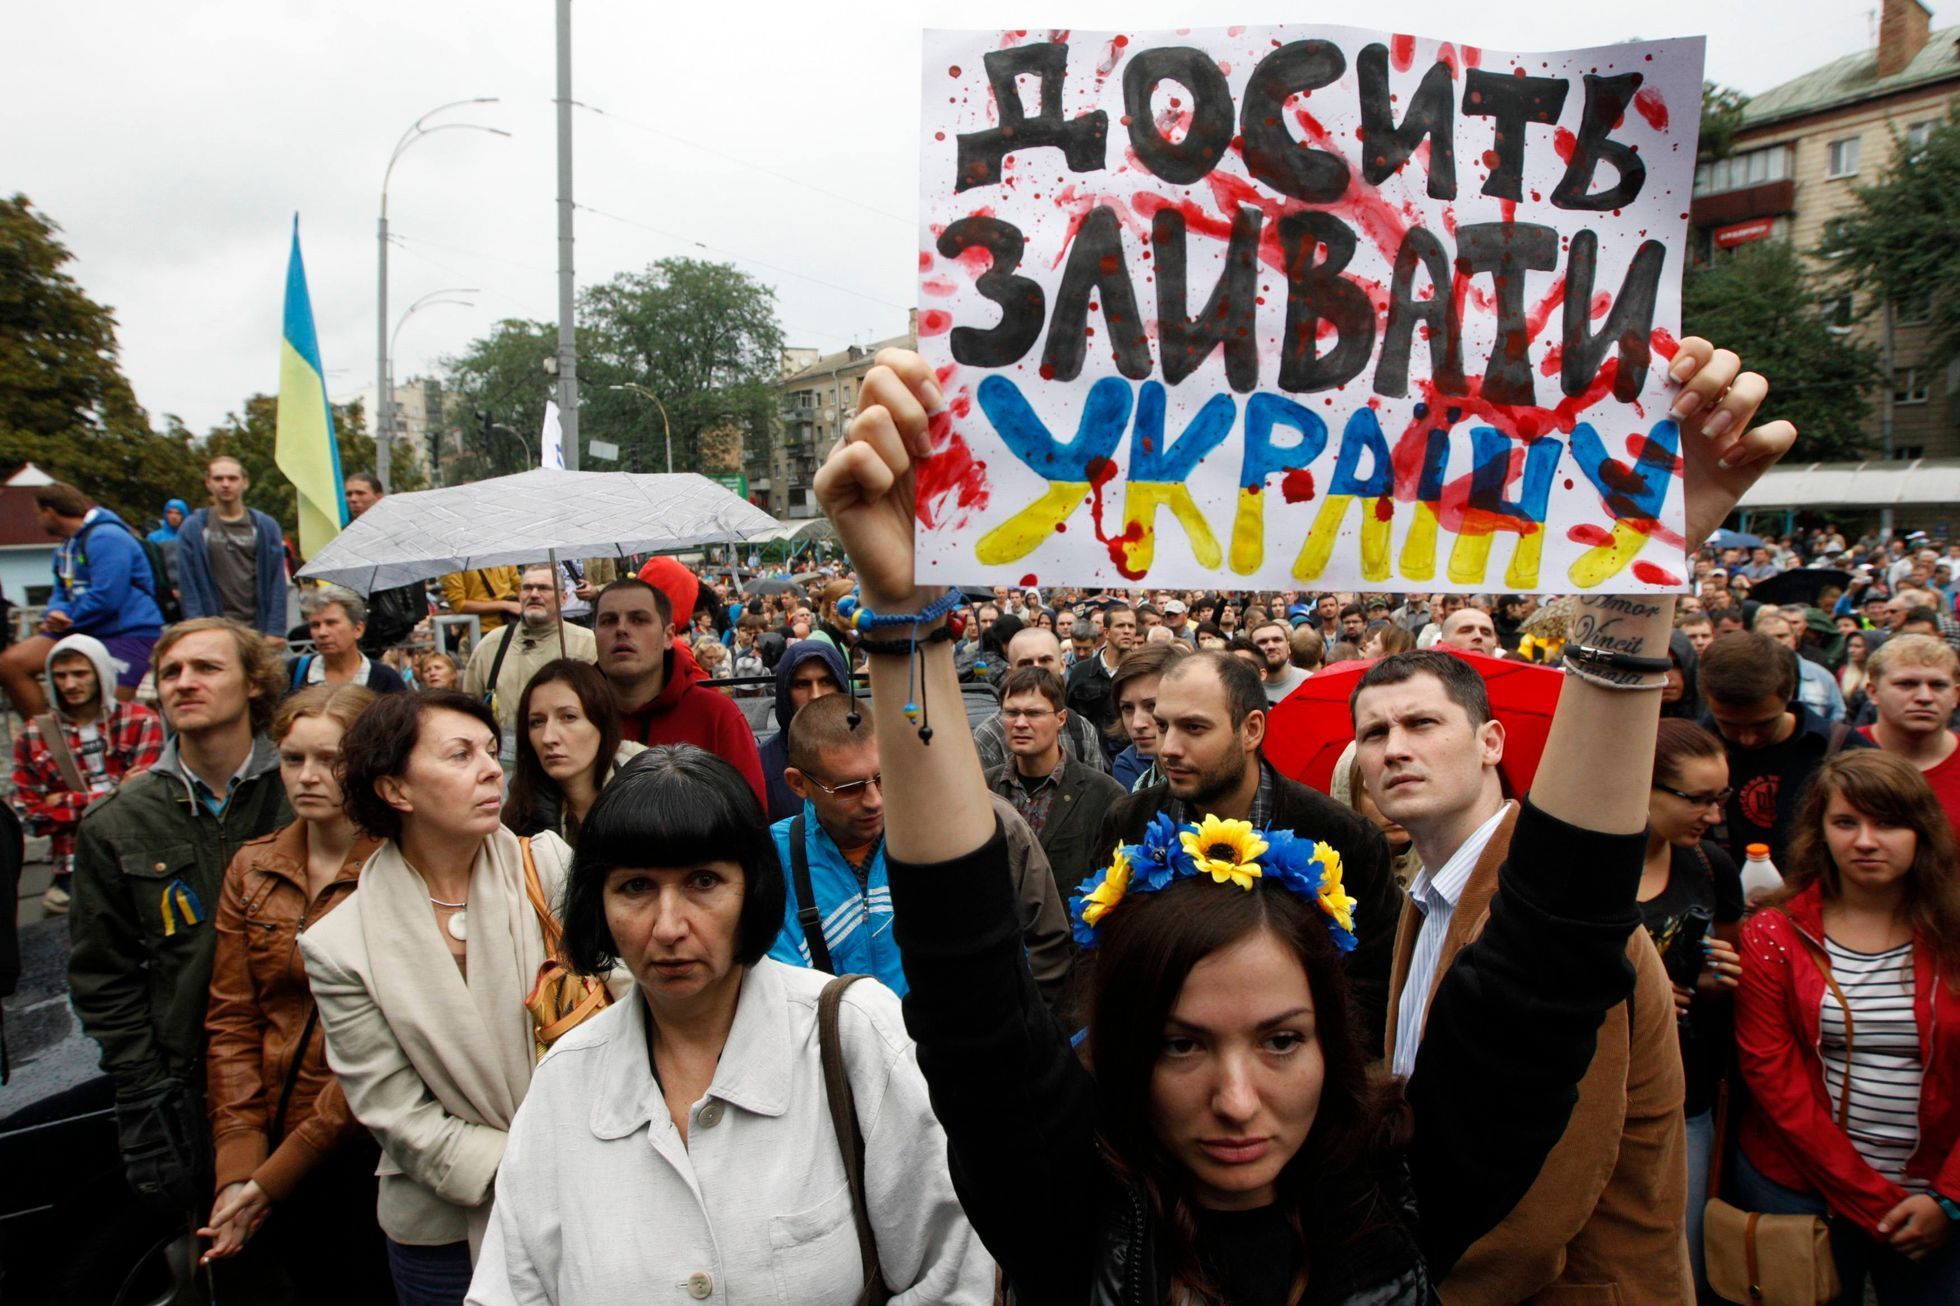 Ukrajina - Kyjev - demonstrace